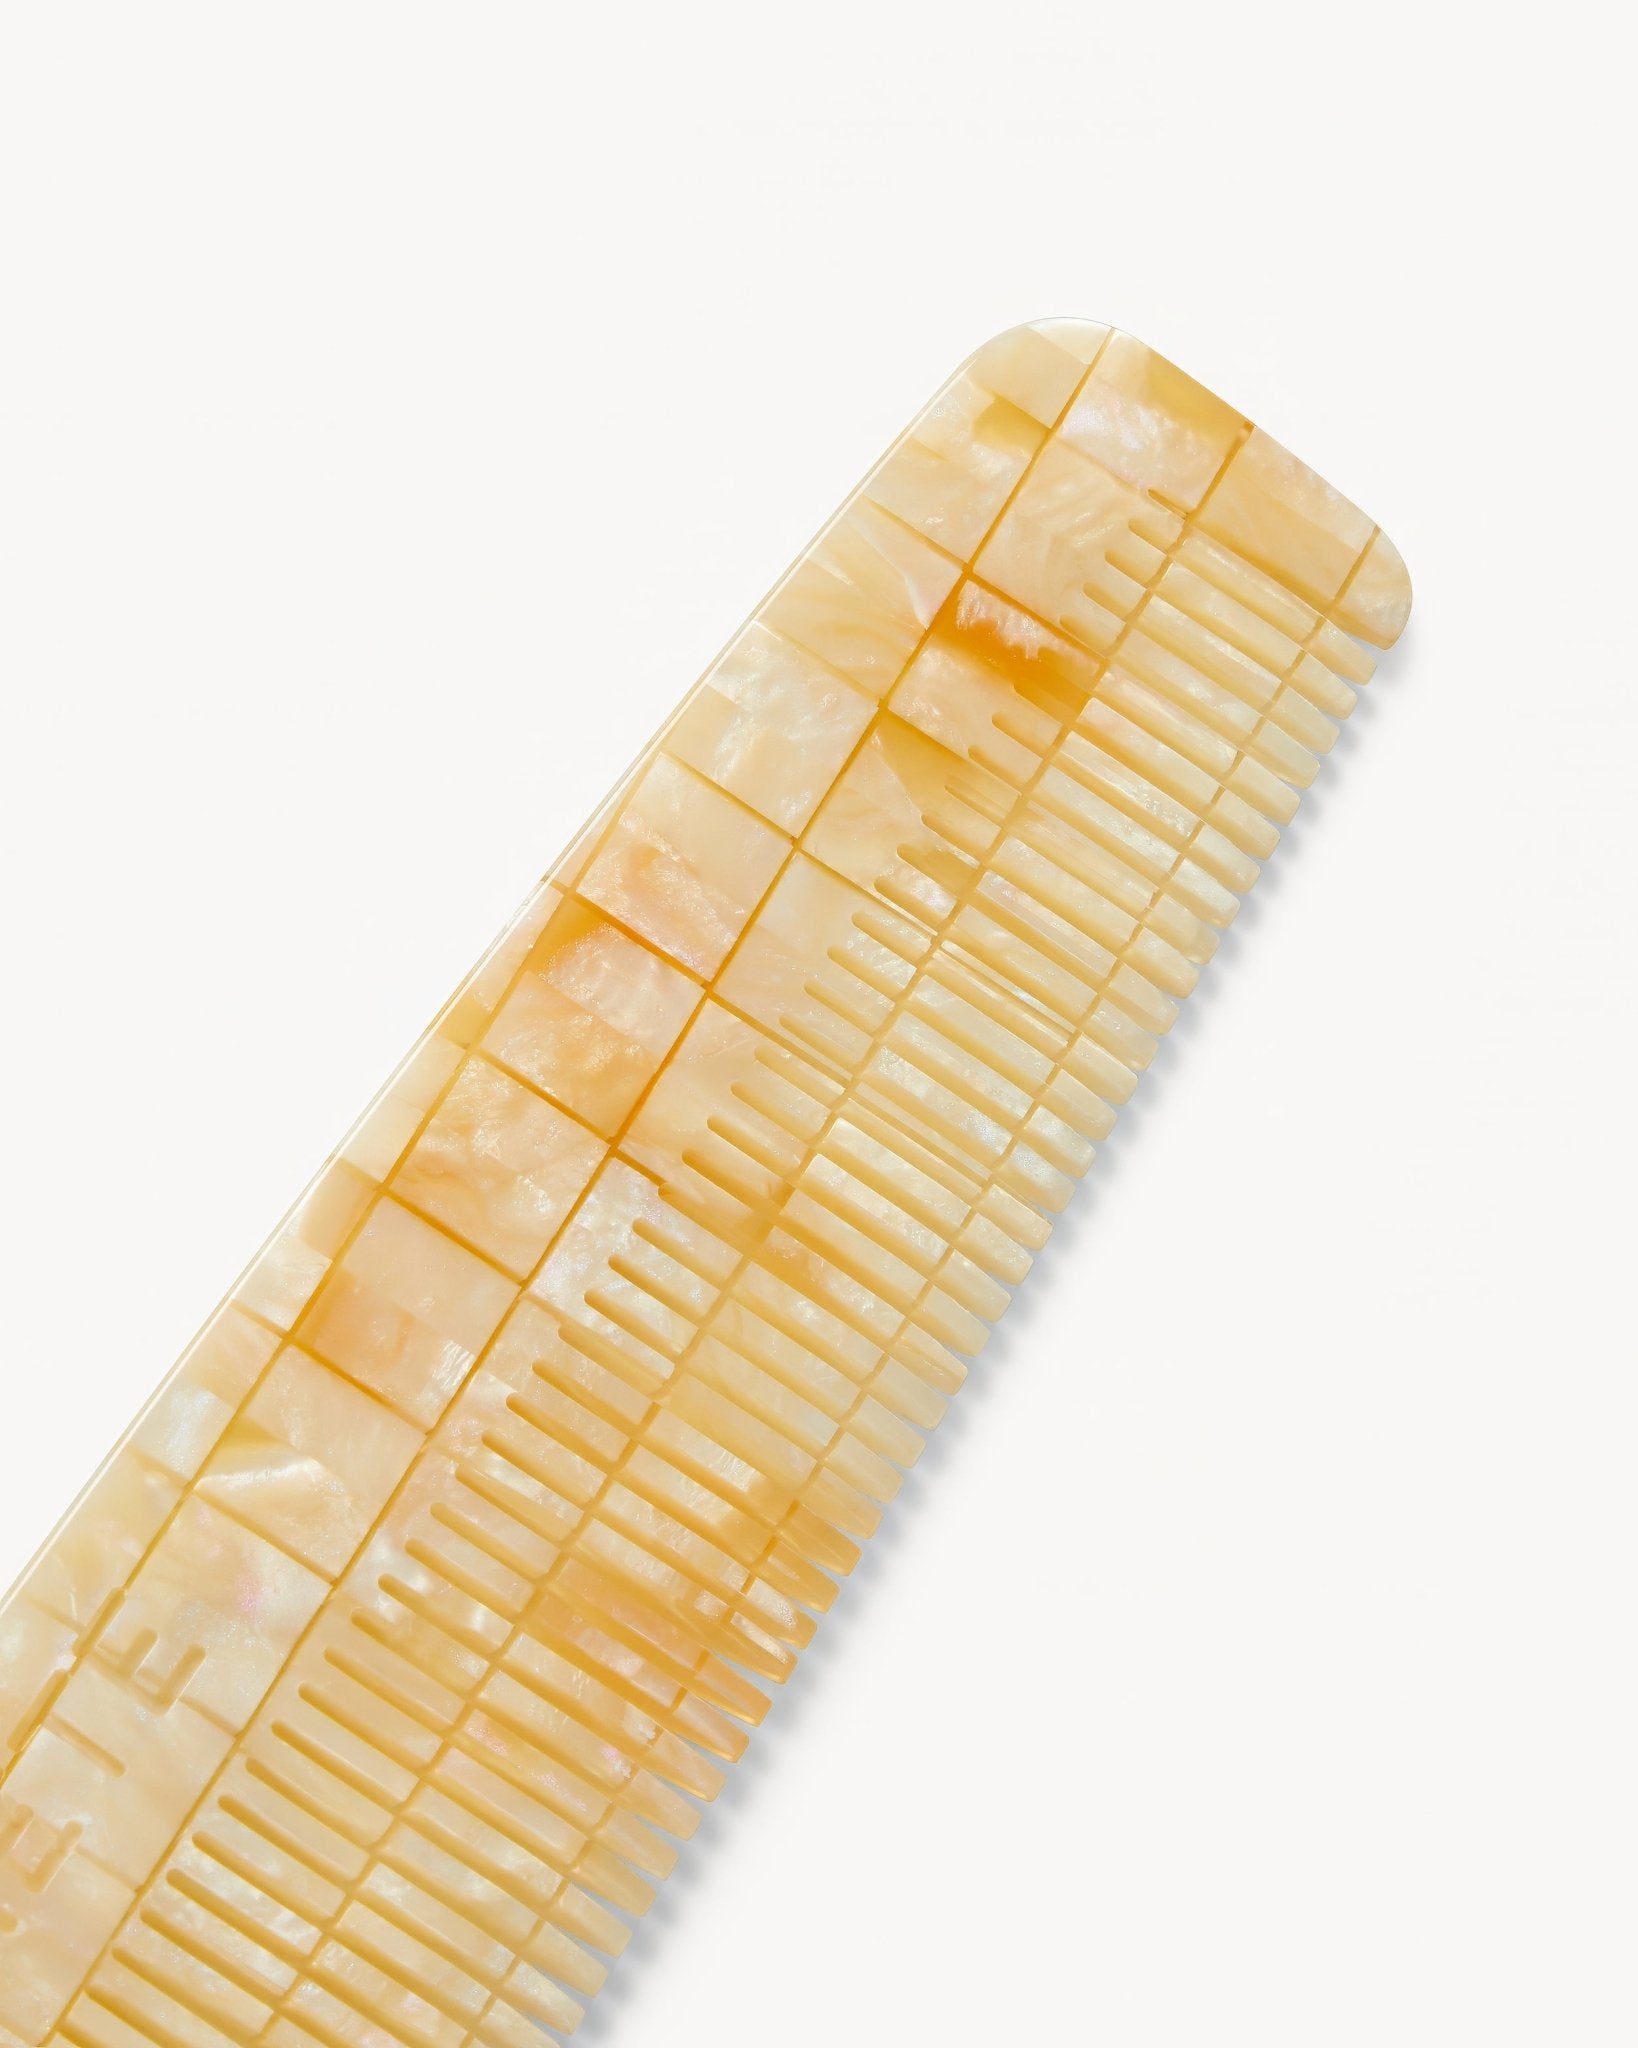 No. 1 Comb in Sea Shell Checker - MACHETE